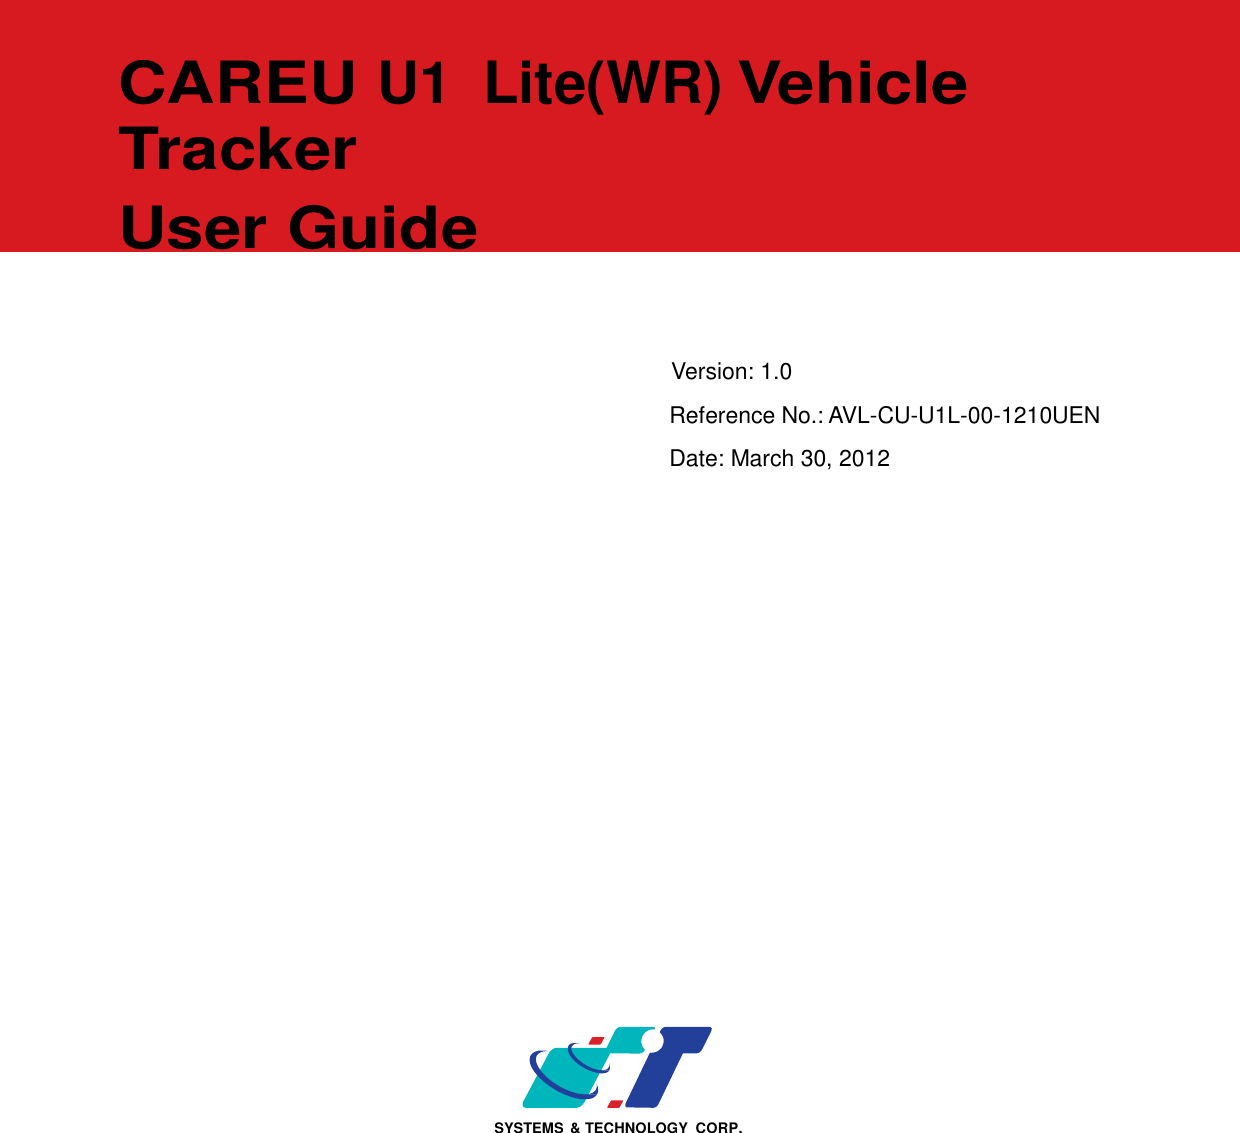                       CAREU U1  Lite(WR) Vehicle Tracker  User Guide      Version: 1.0 Reference No.: AVL-CU-U1L-00-1210UEN Date: March 30, 2012                                SYSTEMS  &amp; TECHNOLOGY  CORP. 